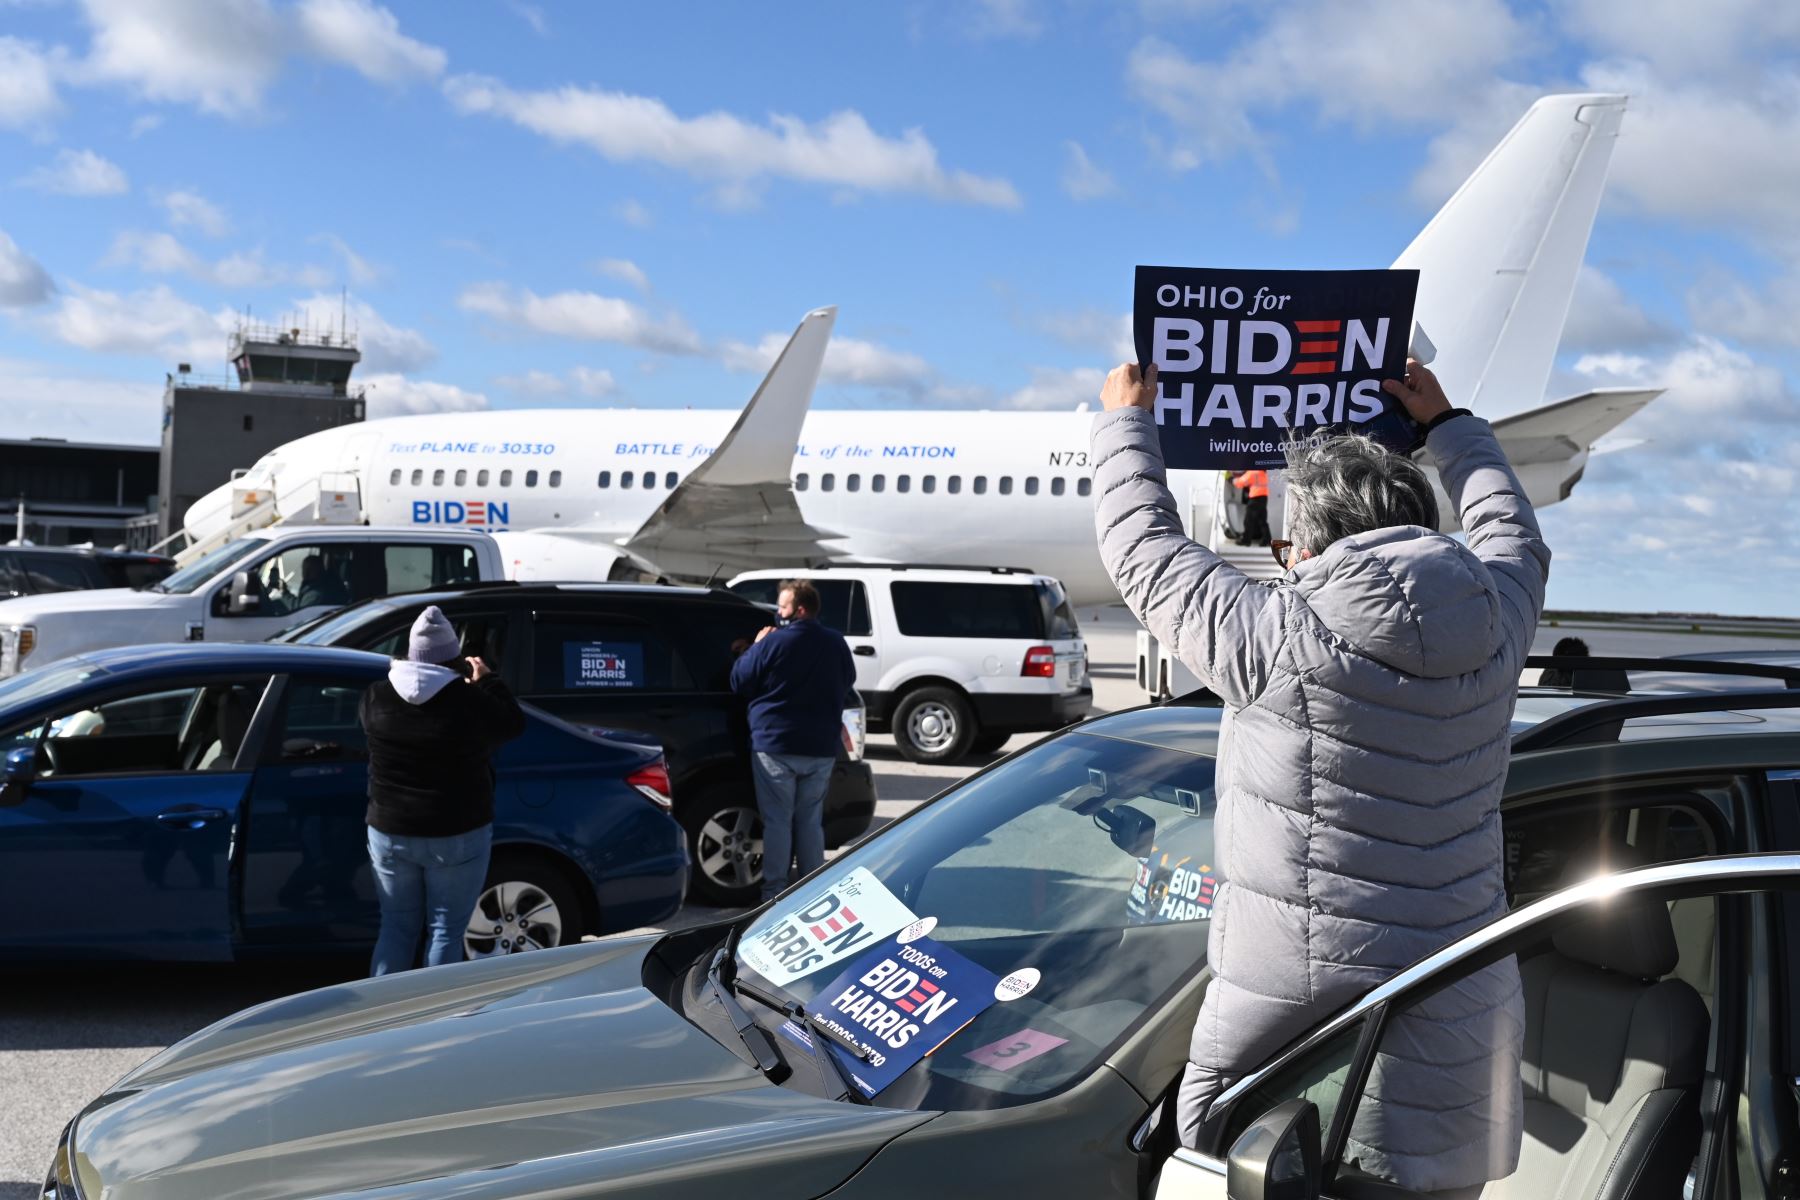 Los partidarios vitorean cuando el avión del candidato presidencial demócrata Joe Biden llega al aeropuerto Burke Lakefront  en Cleveland, Ohio.
Foto: AFP